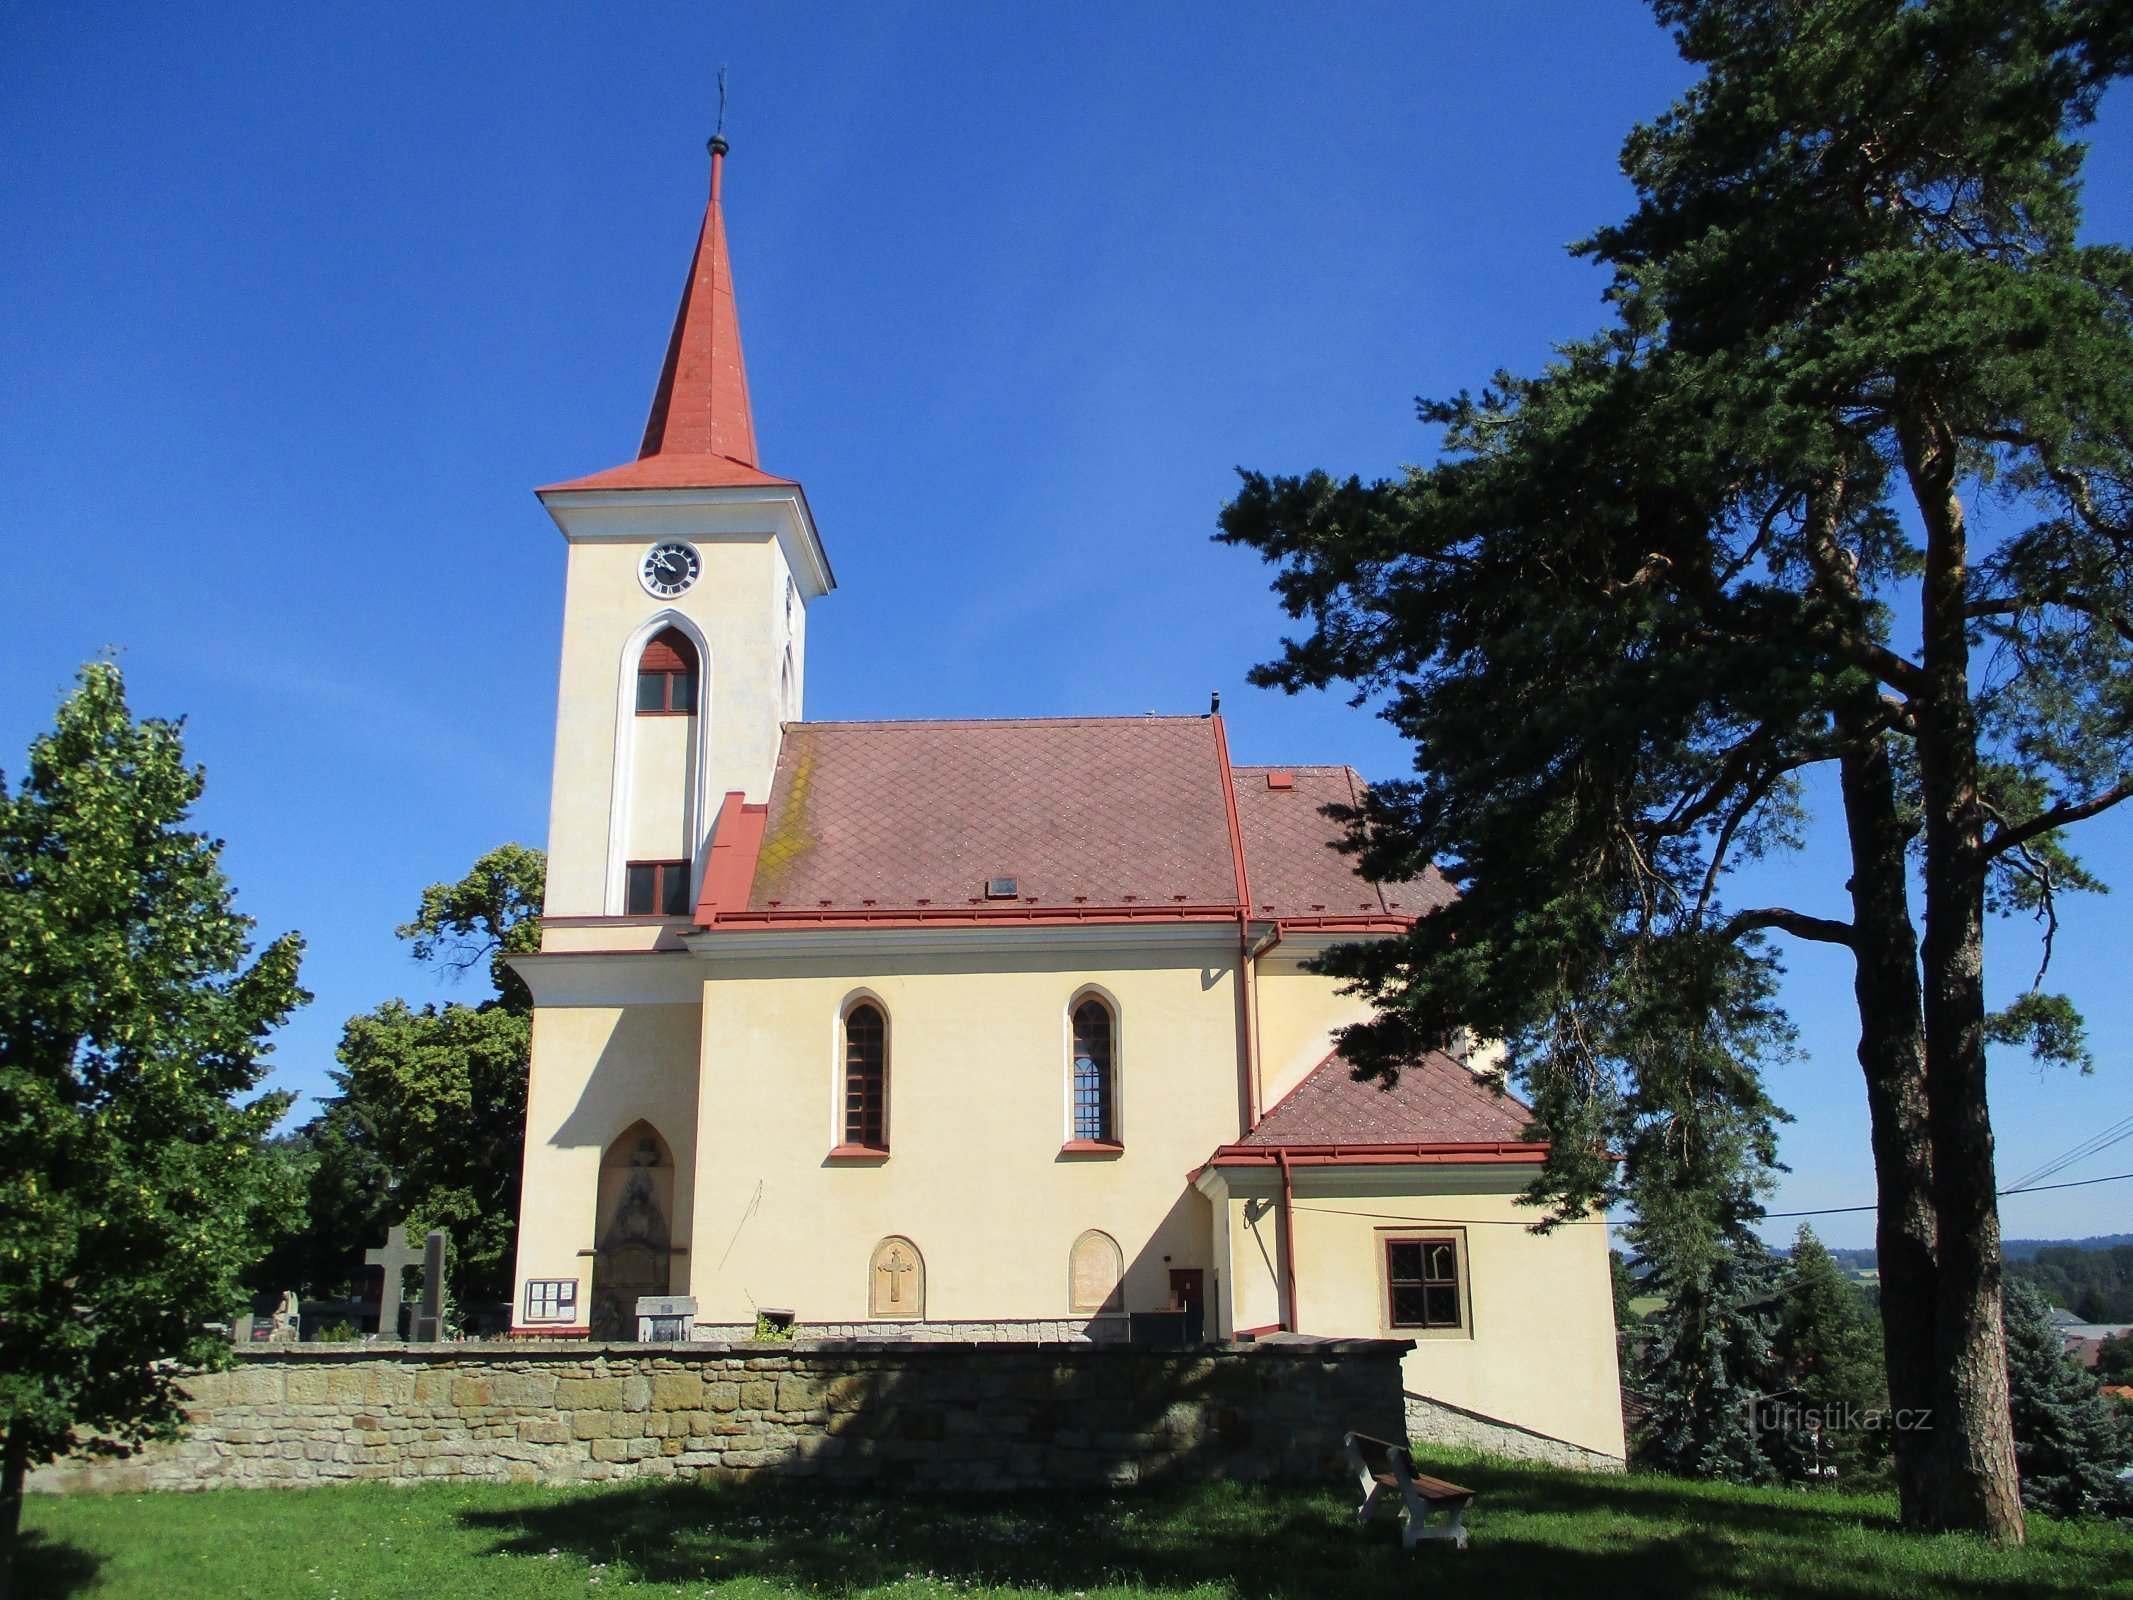 Nhà thờ Biến hình (Velichovky)